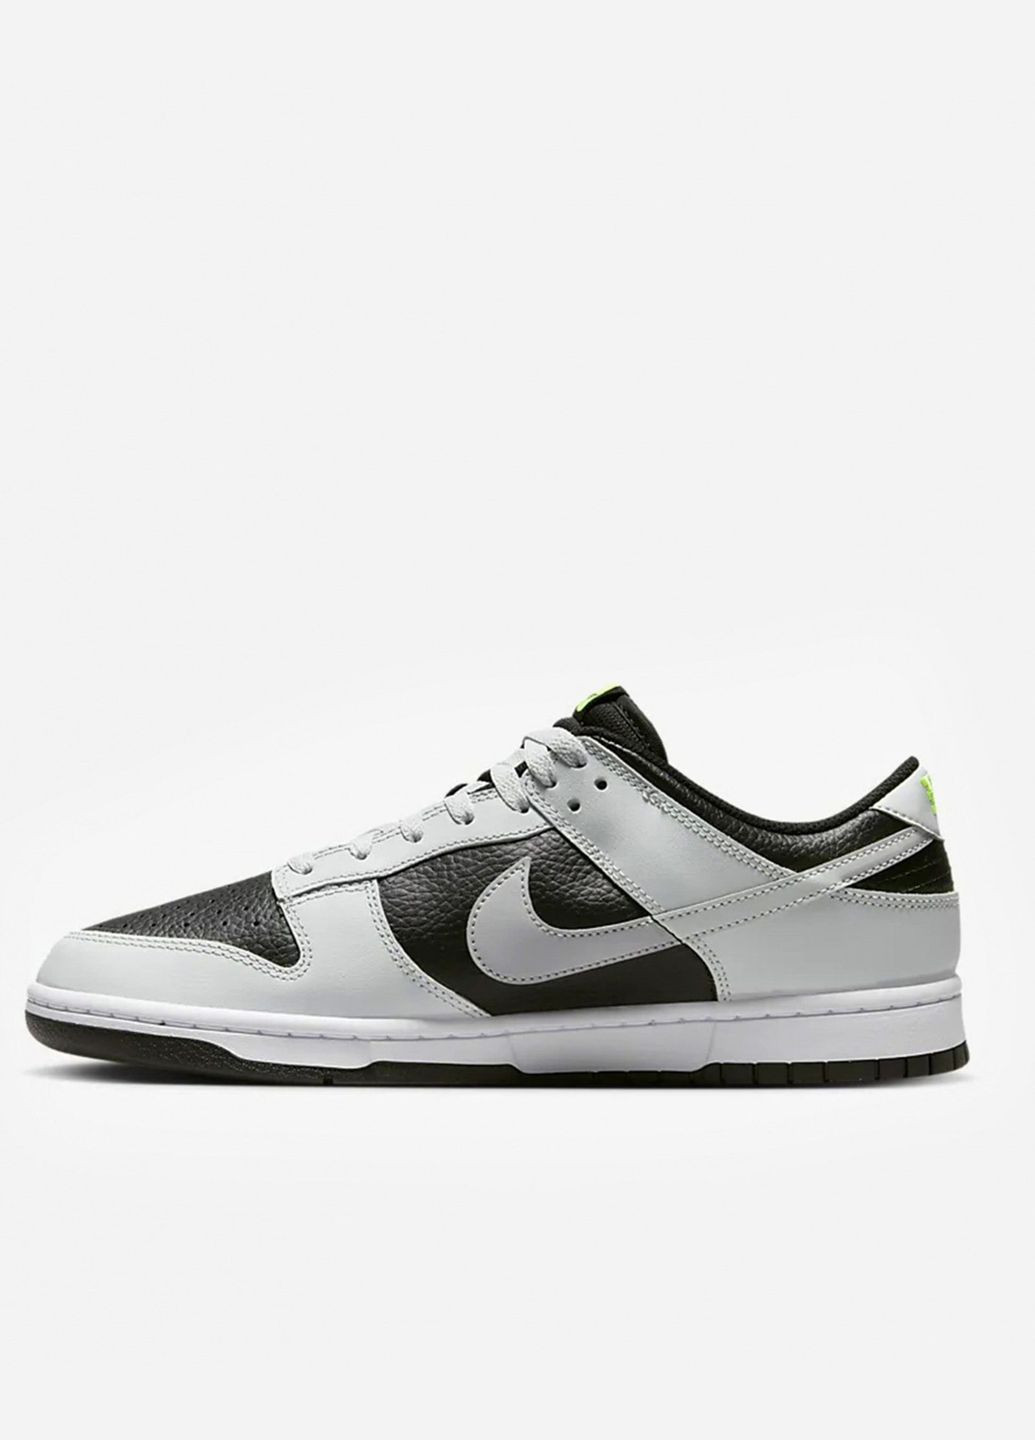 Серые всесезонные кроссовки мужские dunk low fd9756-001 весна-осень кожа черно-белые Nike